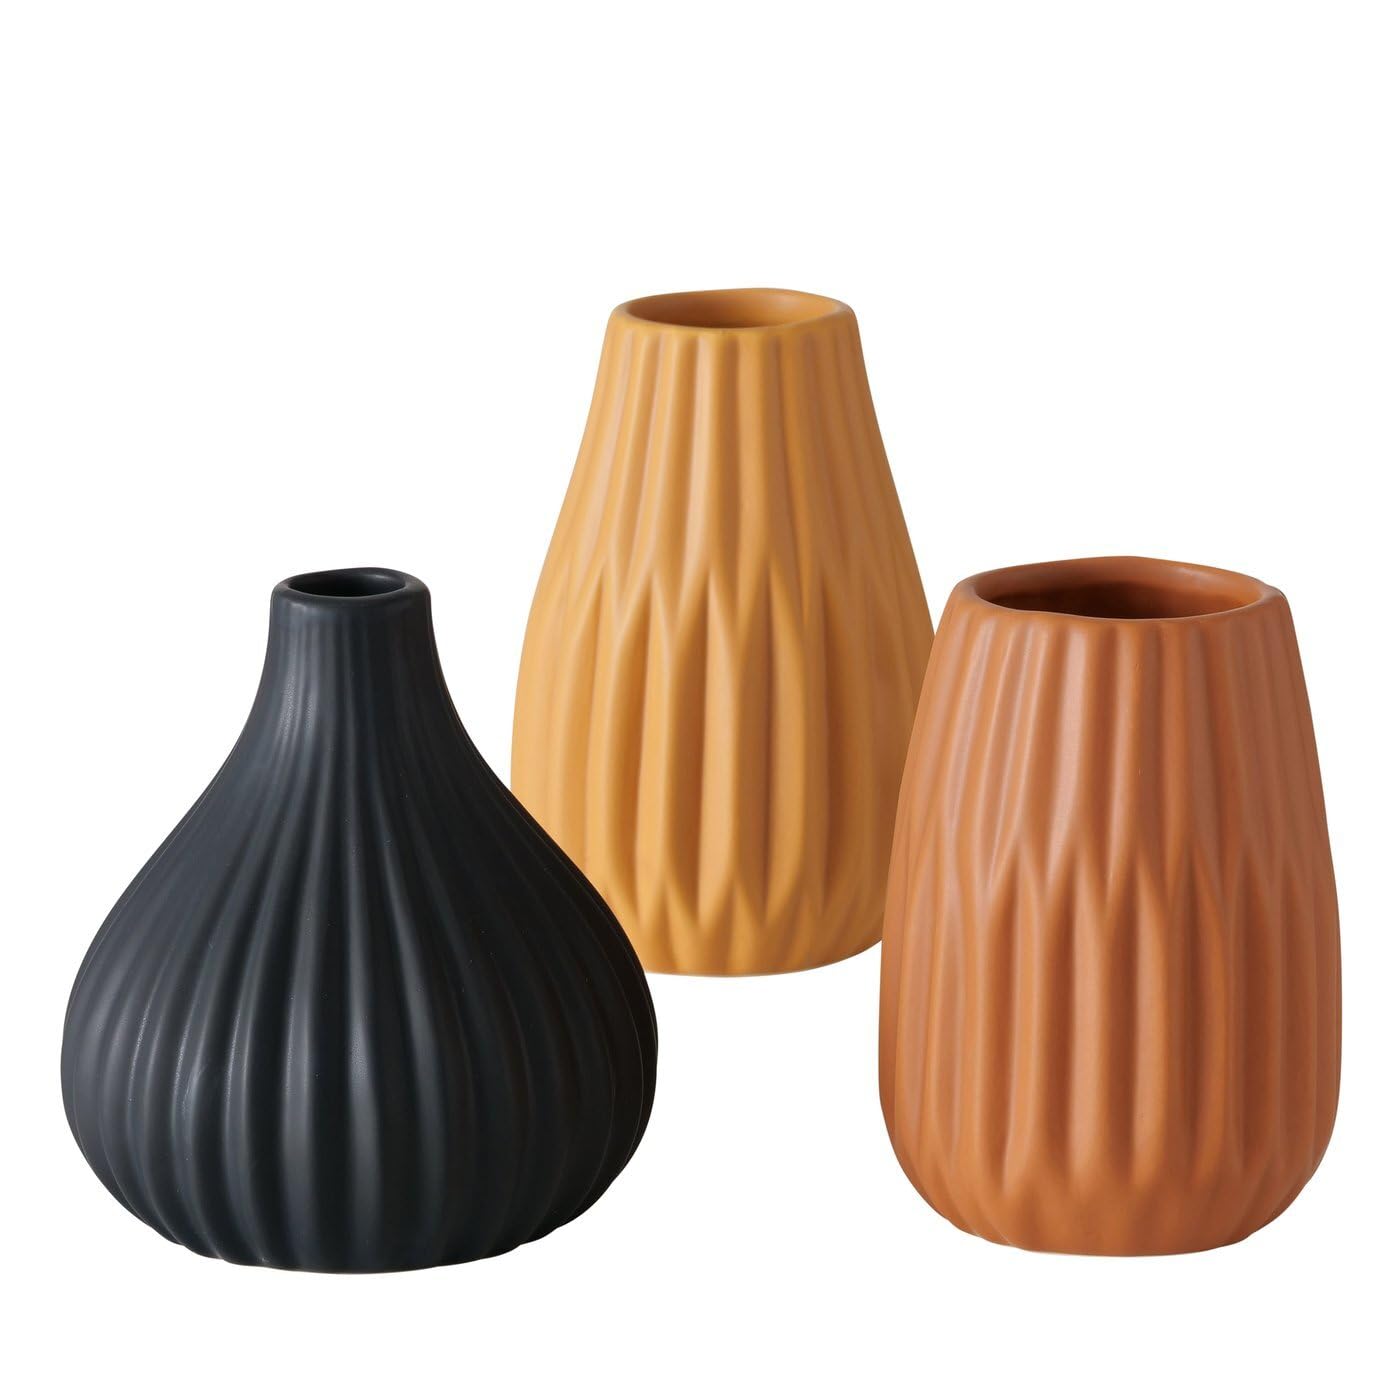 ReWu Blumenvase aus Keramik im 3er Set Mattes Design Mehrfarbig Höhe 14 cm Tischdekoration Moderne Vase Tischvase - Schwarz Braun